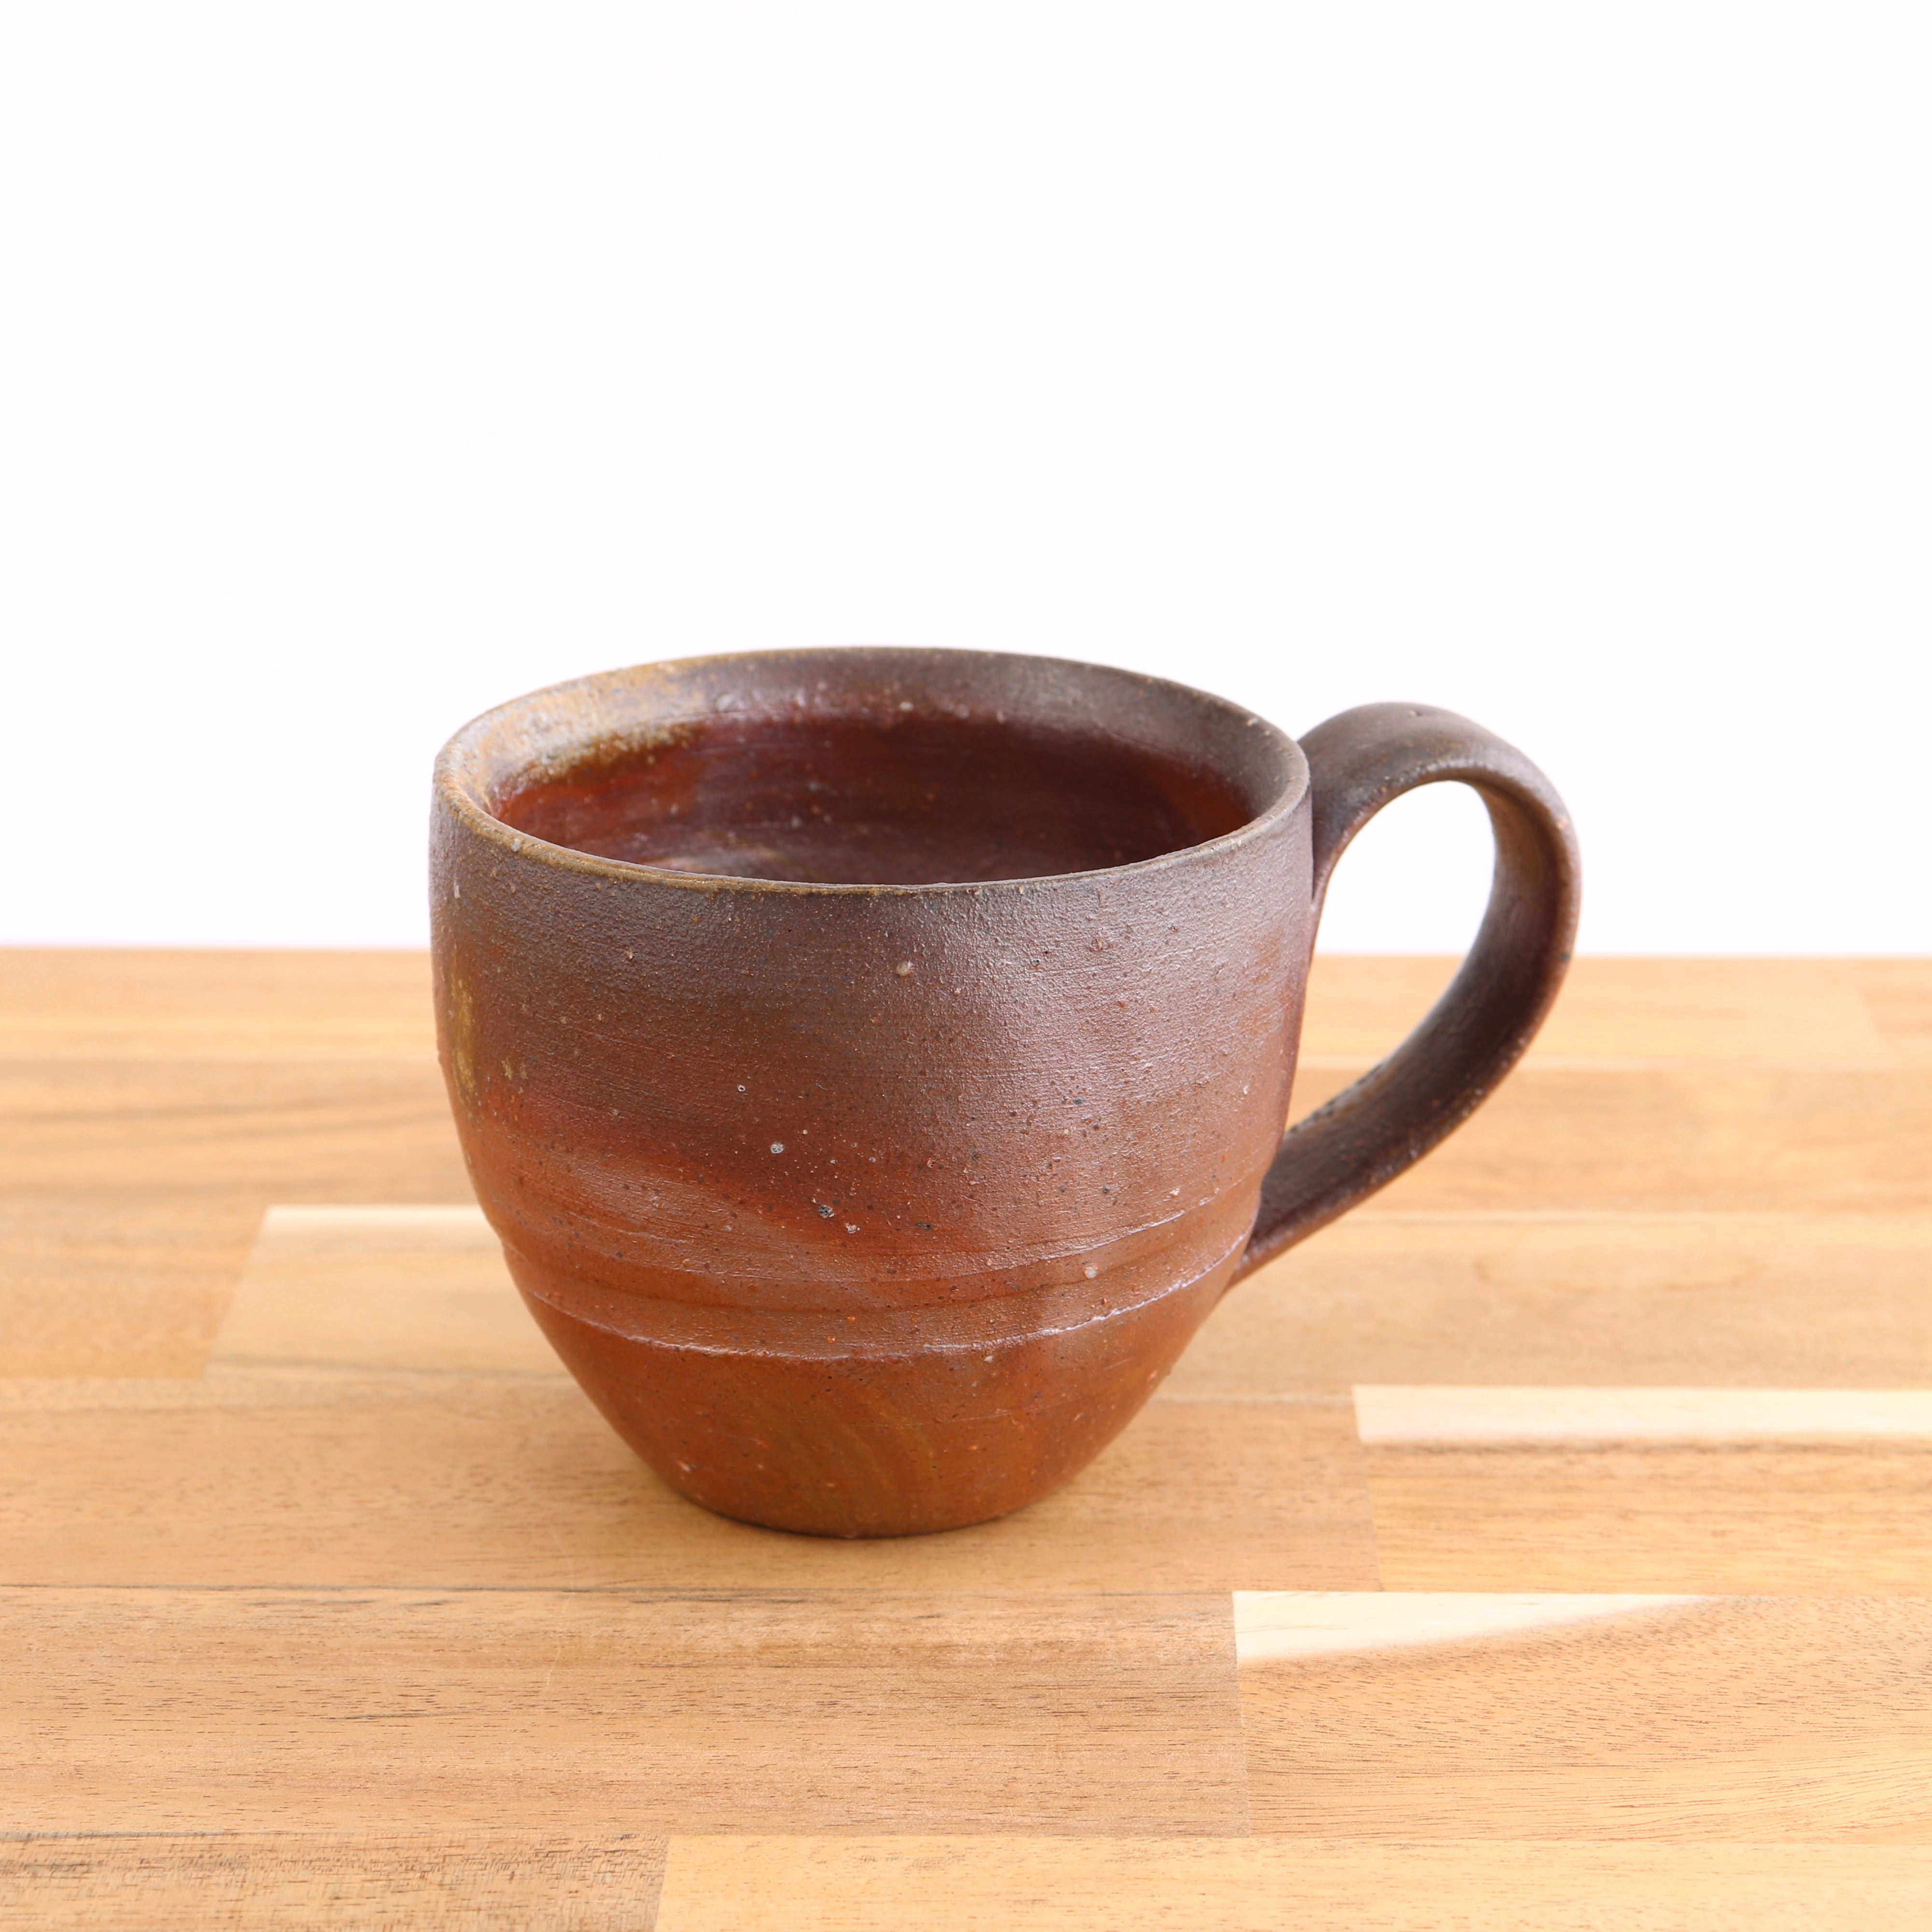 備前焼 コーヒーカップ 陶器 マグカップ コップ Iichi ハンドメイド クラフト作品 手仕事品の通販